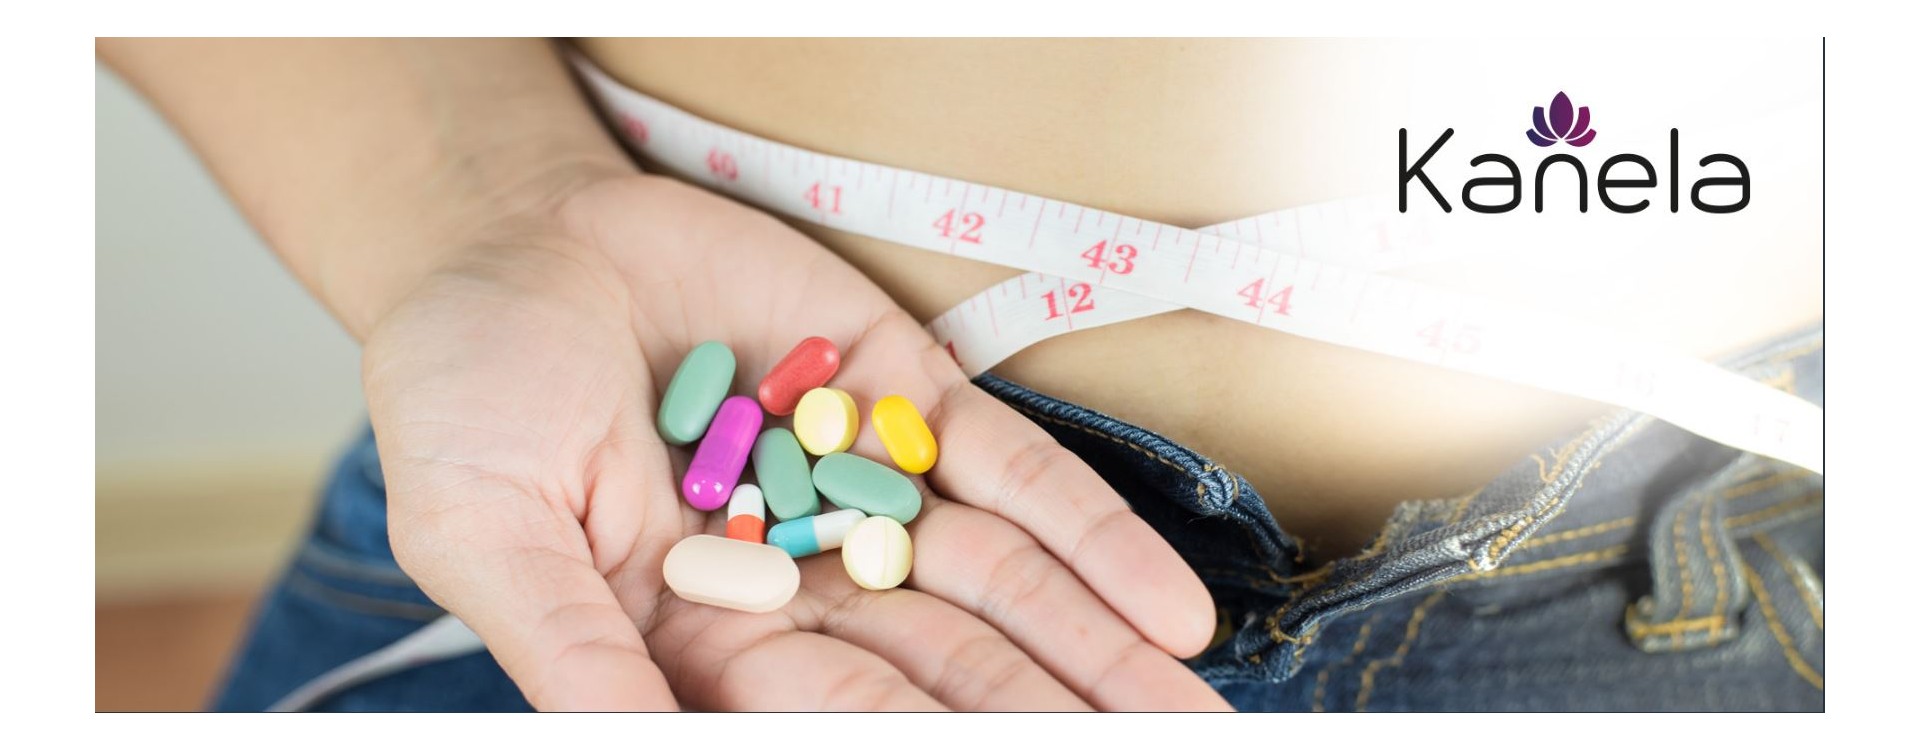 Quels sont les avantages des pilules amaigrissantes?